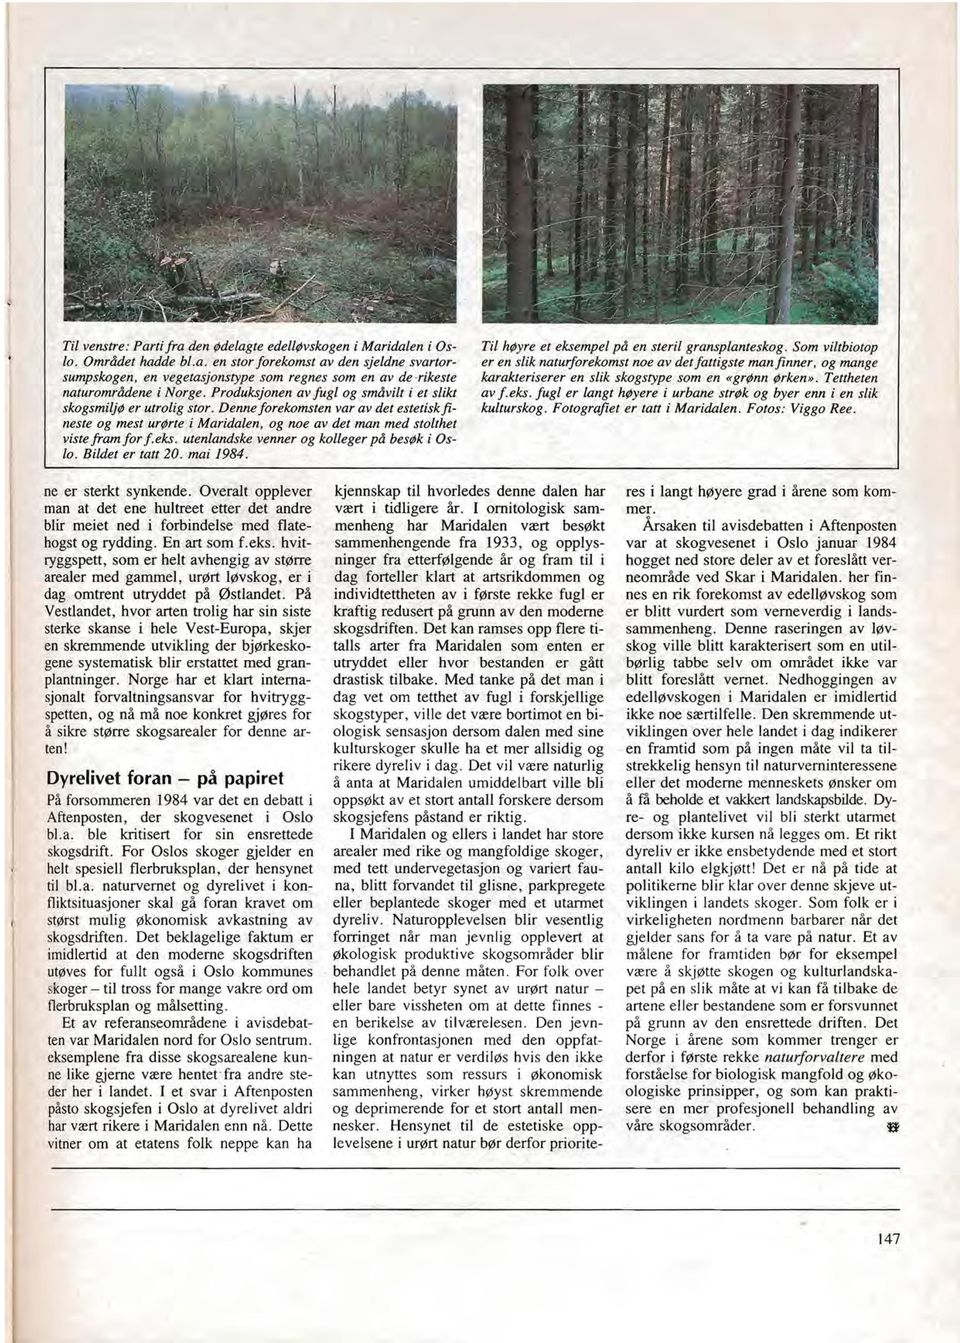 utenlandske venner og kolleger på besøk i Oslo. Bildet er tatt 20. mai 1984. Til høyre et eksempel på en steril gransplanteskog.